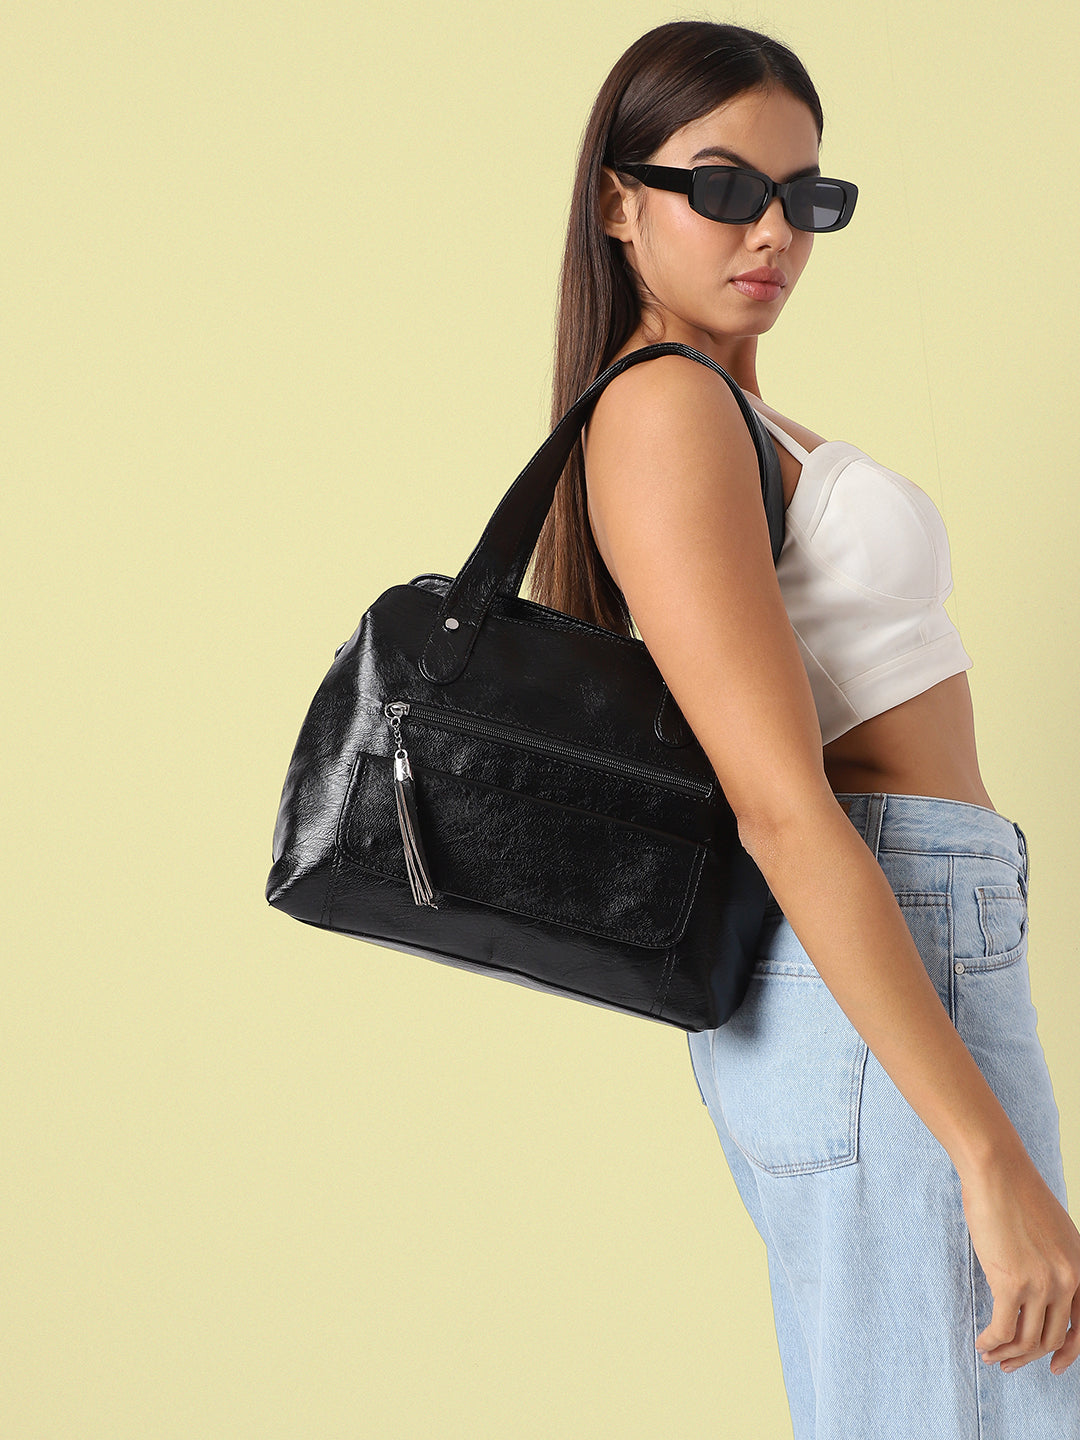 Tassel Flap Handbag - Black